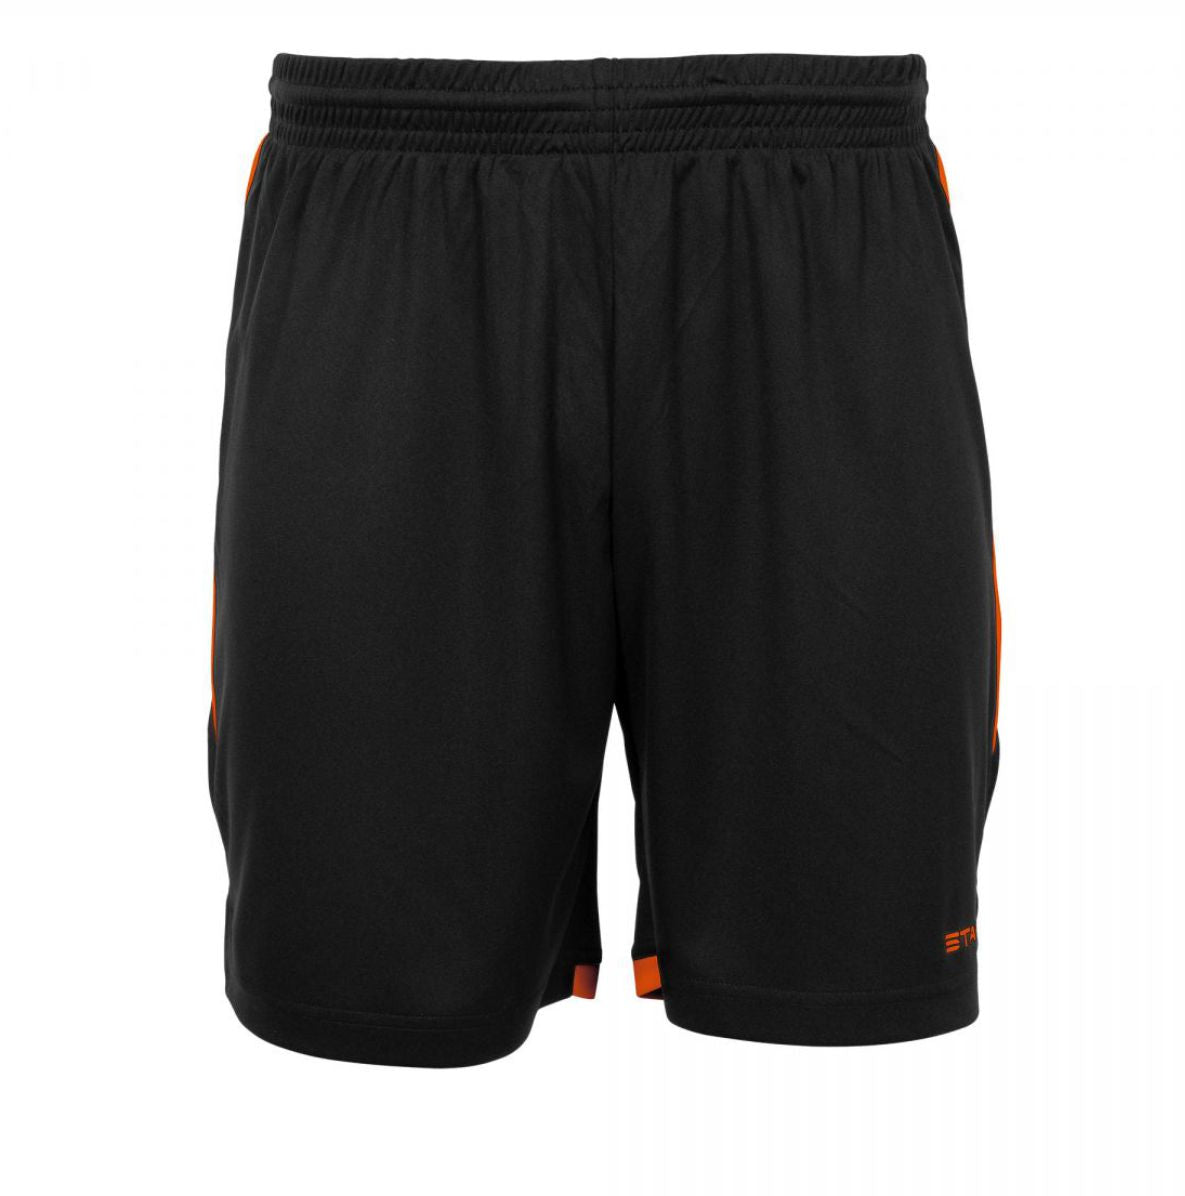 Stanno - Focus Shorts - Black & Orange - Junior